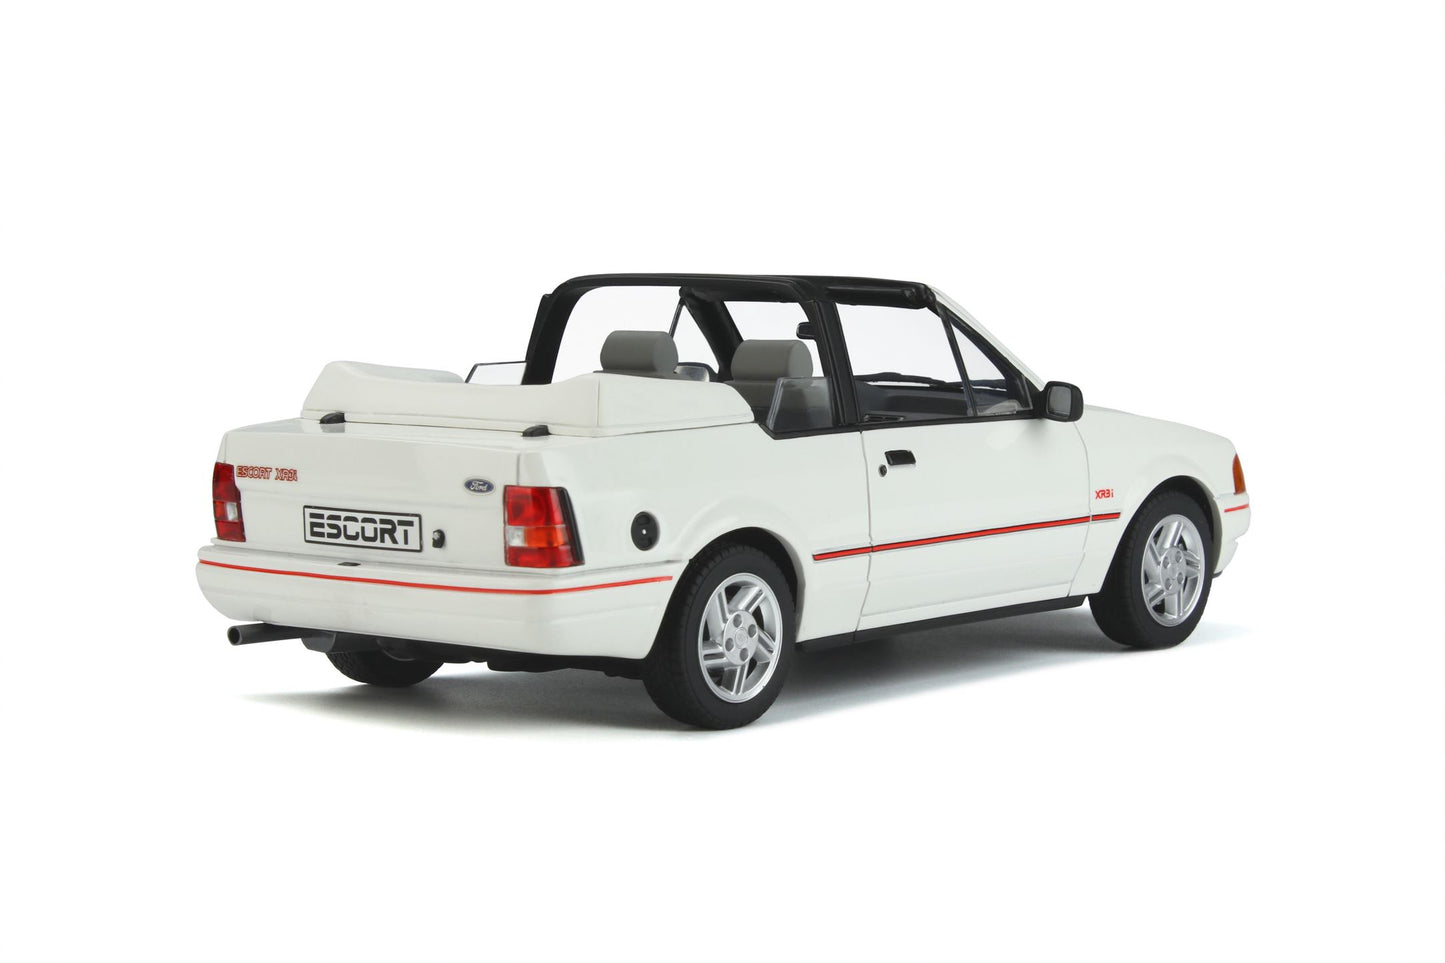 1:18 Ford Escort MK4 XR3i Cabriolet, hvid, 1986, Ottomobile, OT398, lukket model, limited